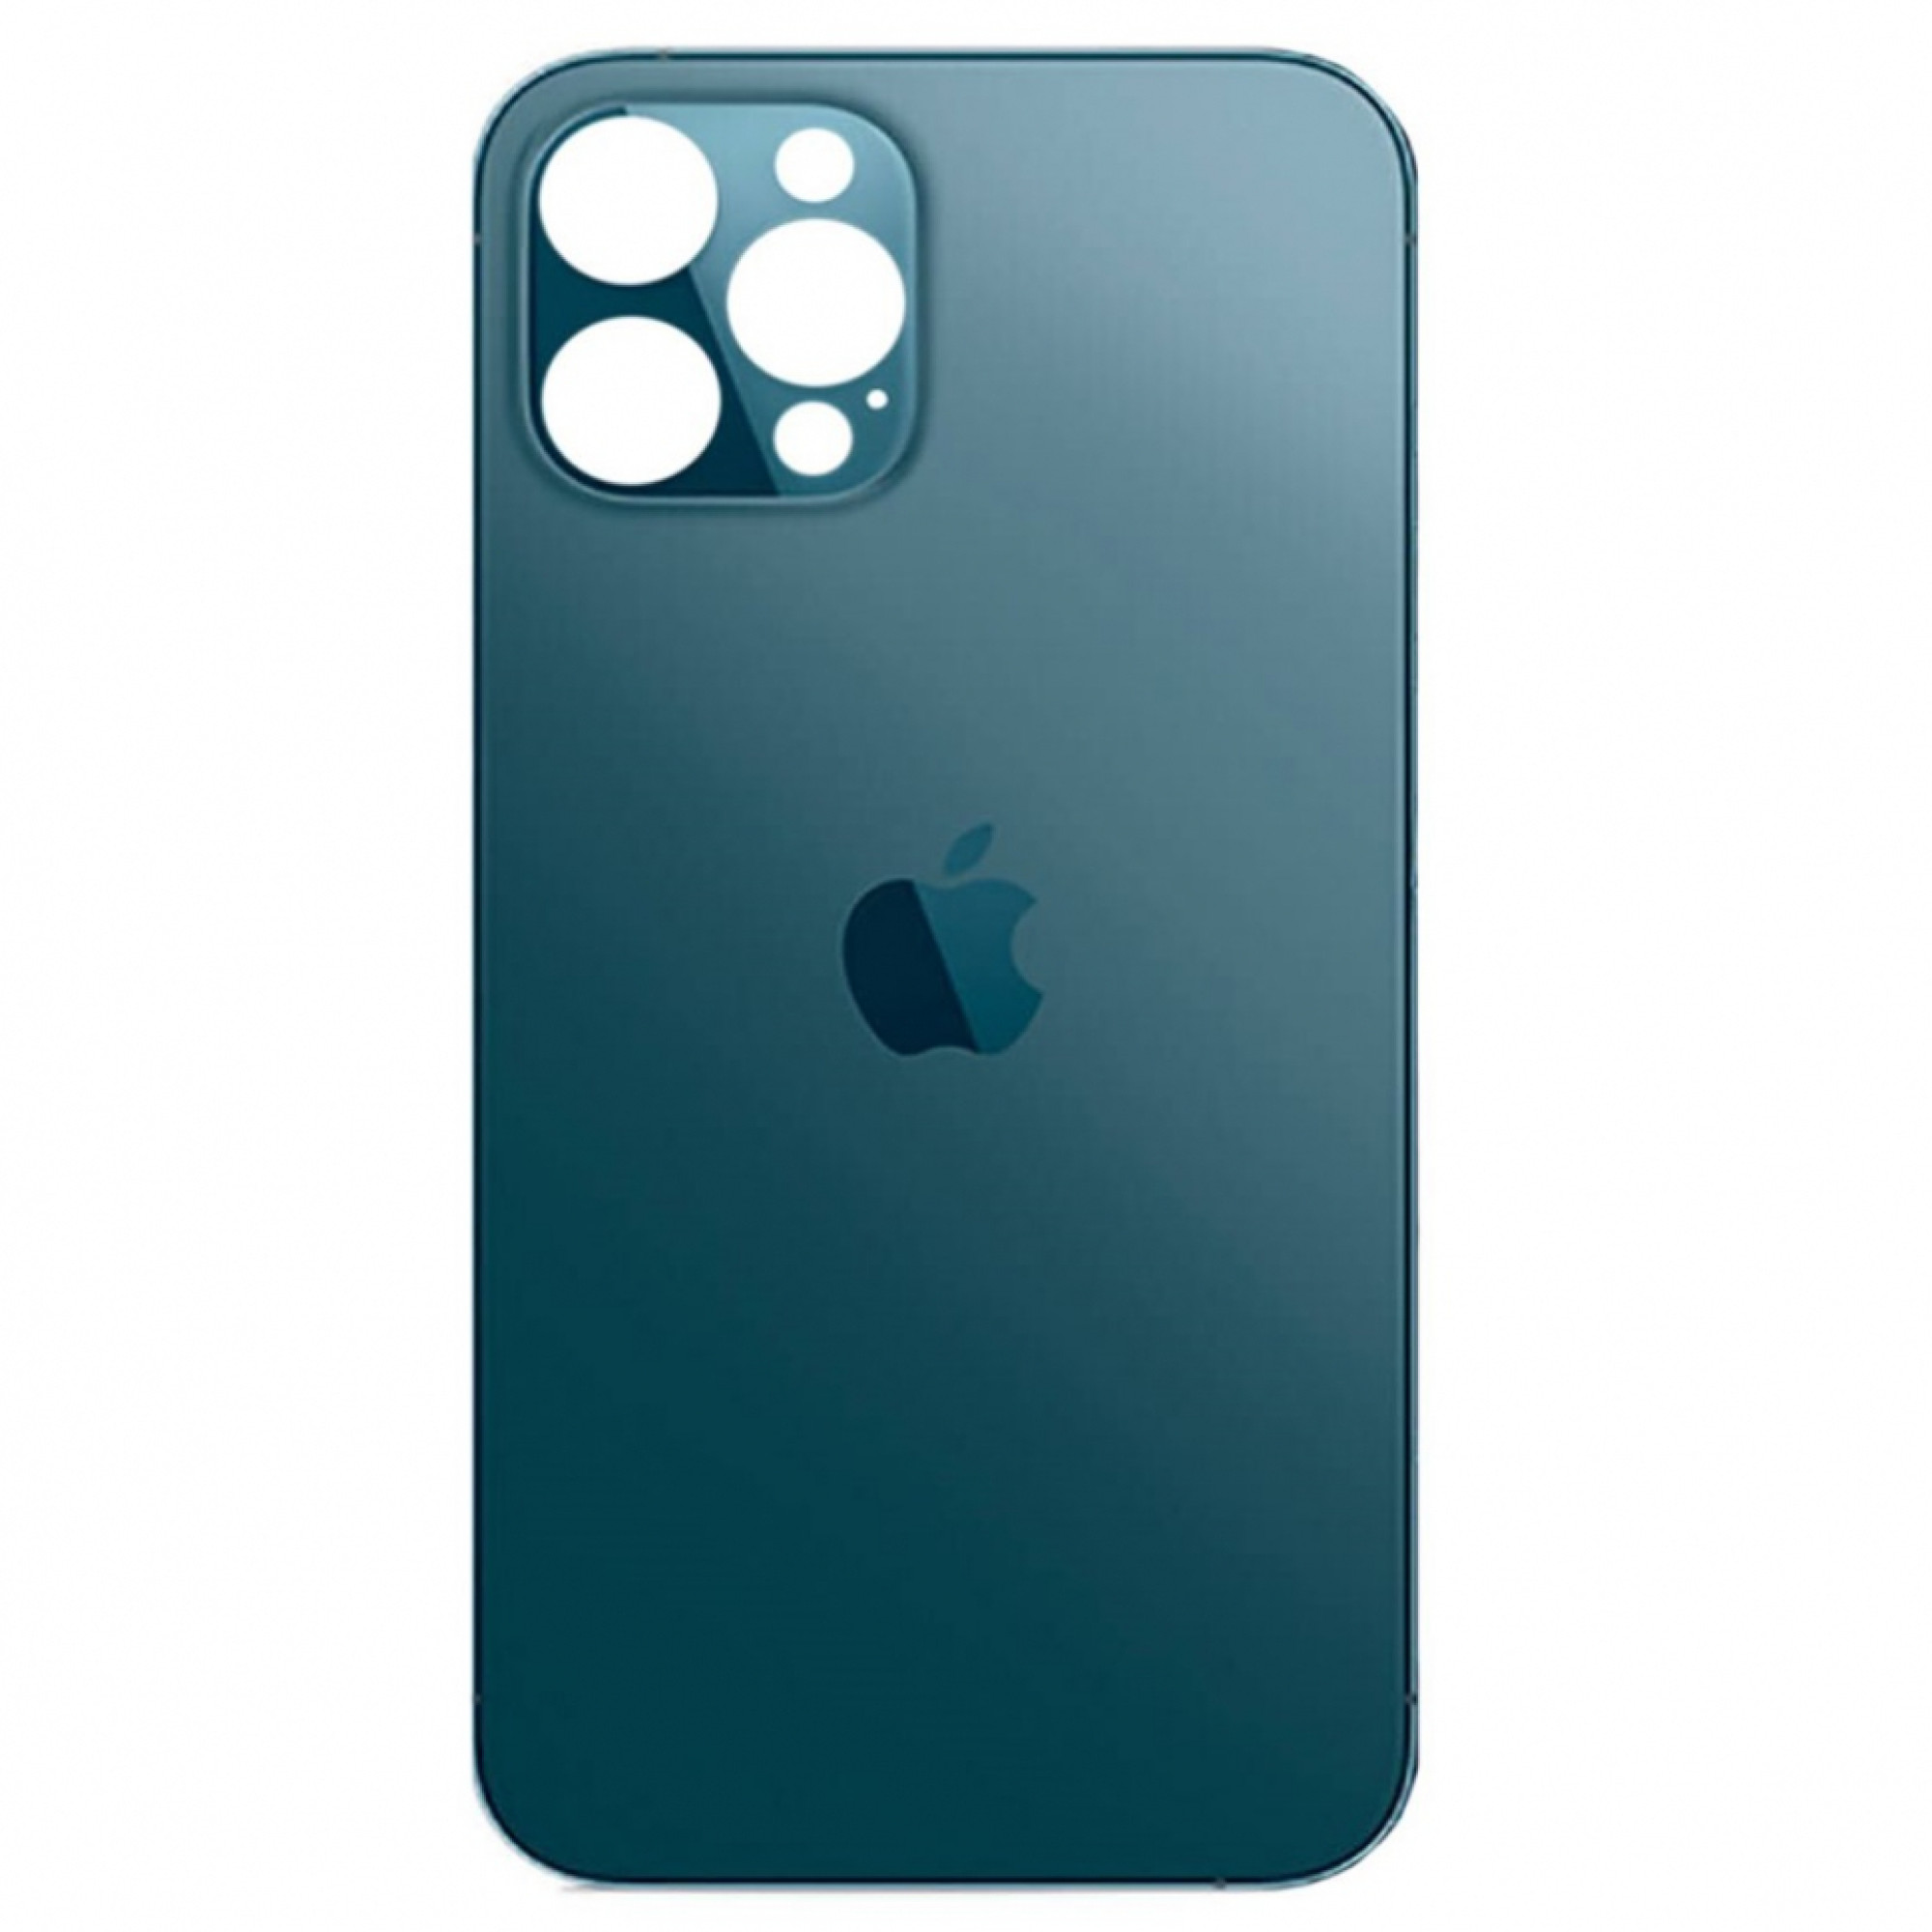 Задняя крышка для Apple iPhone 12 Pro Max (широкое отверстие под камеру), синяя